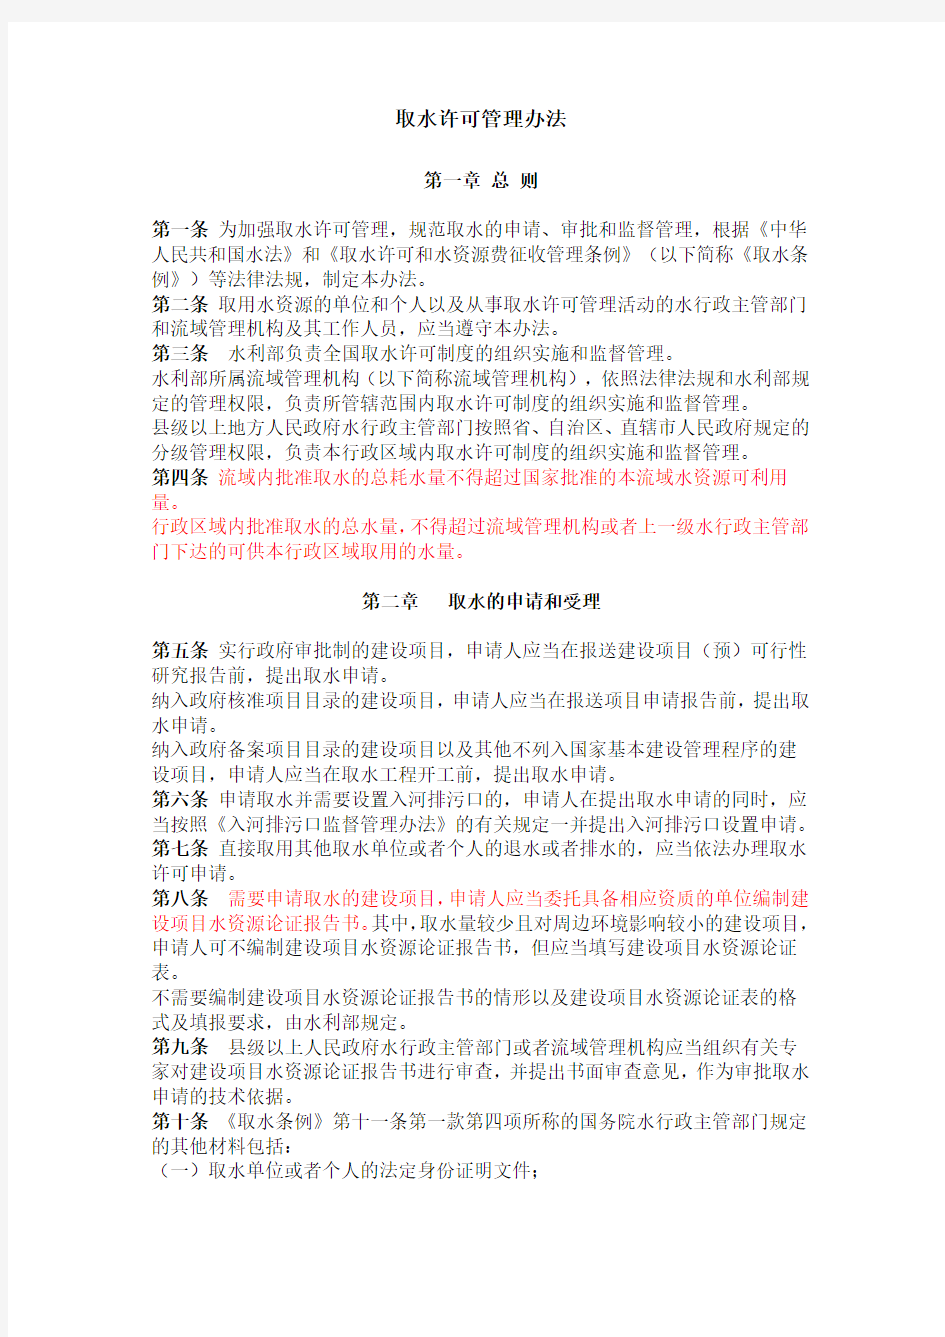 取水许可管理办法 中华人民共和国水利部令第34号 2008